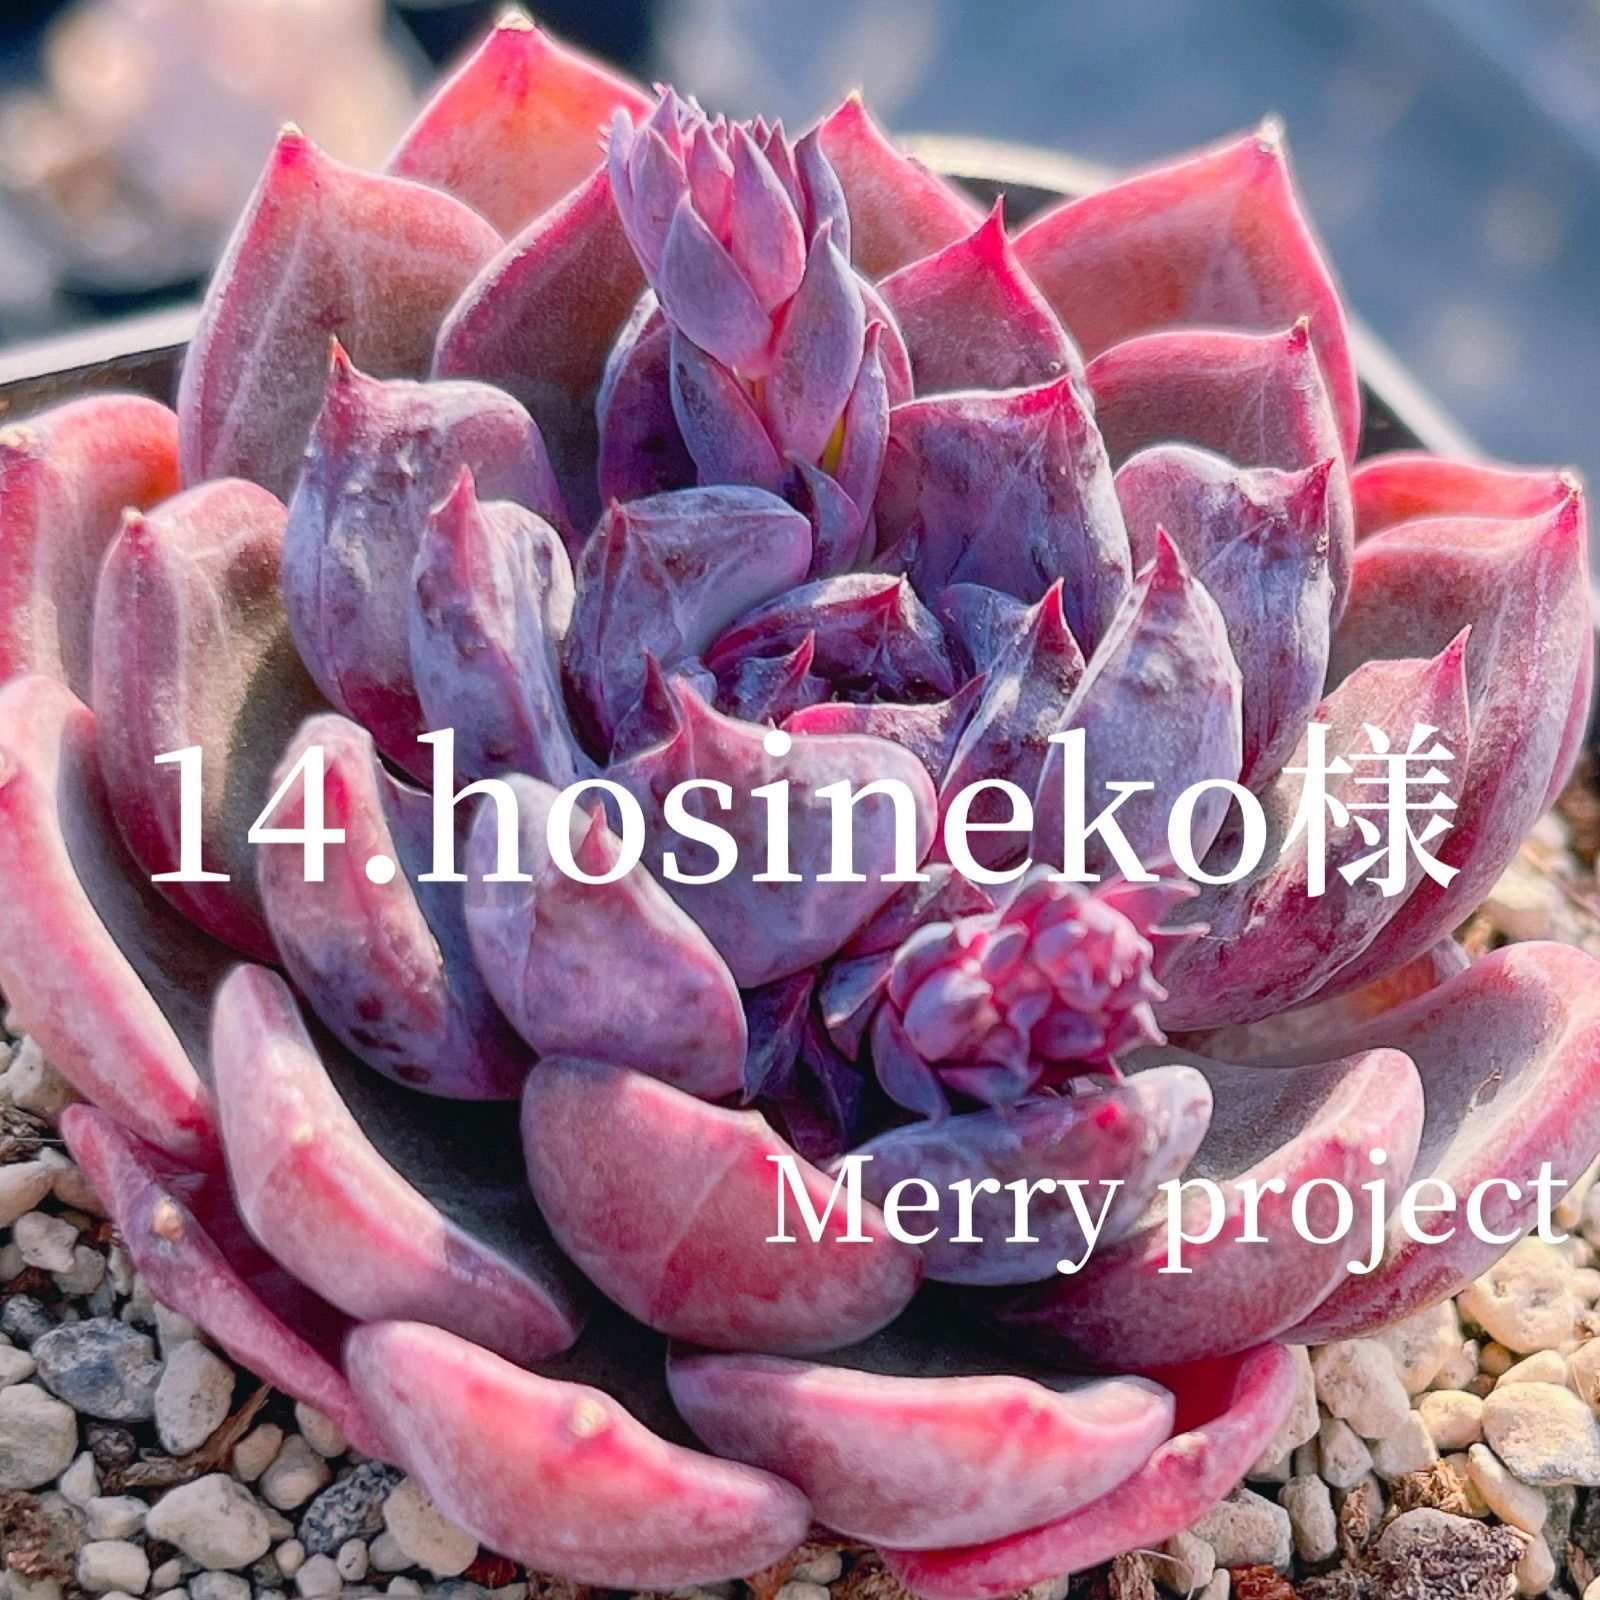 14.hosineko様 - Merry project - メルカリ